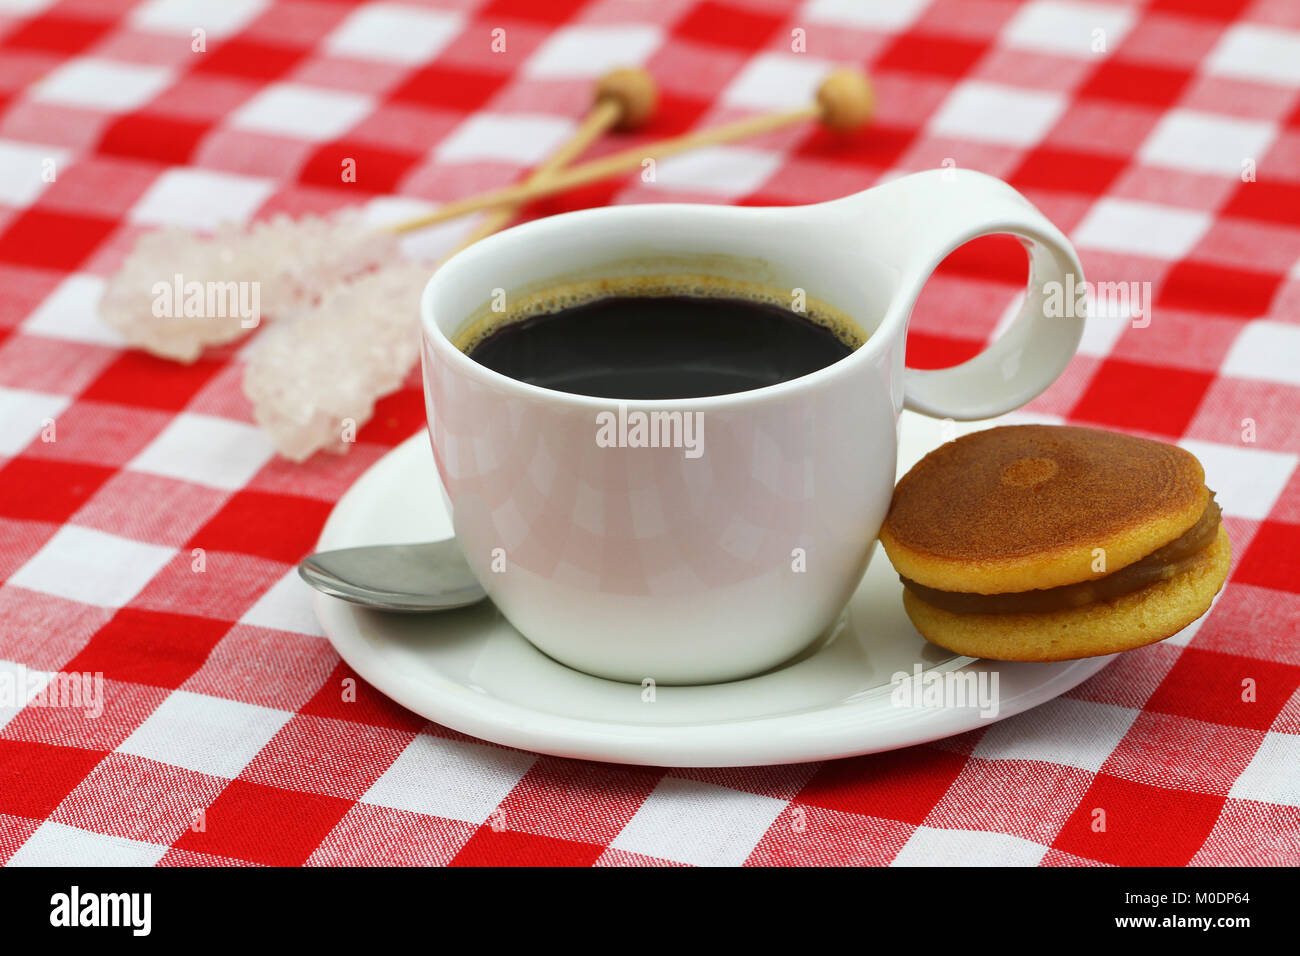 Tasse schwarzen Kaffee in weiße Tasse und schwarze Bohne Cookie auf rot-weiß-karierten Tuch Stockfoto